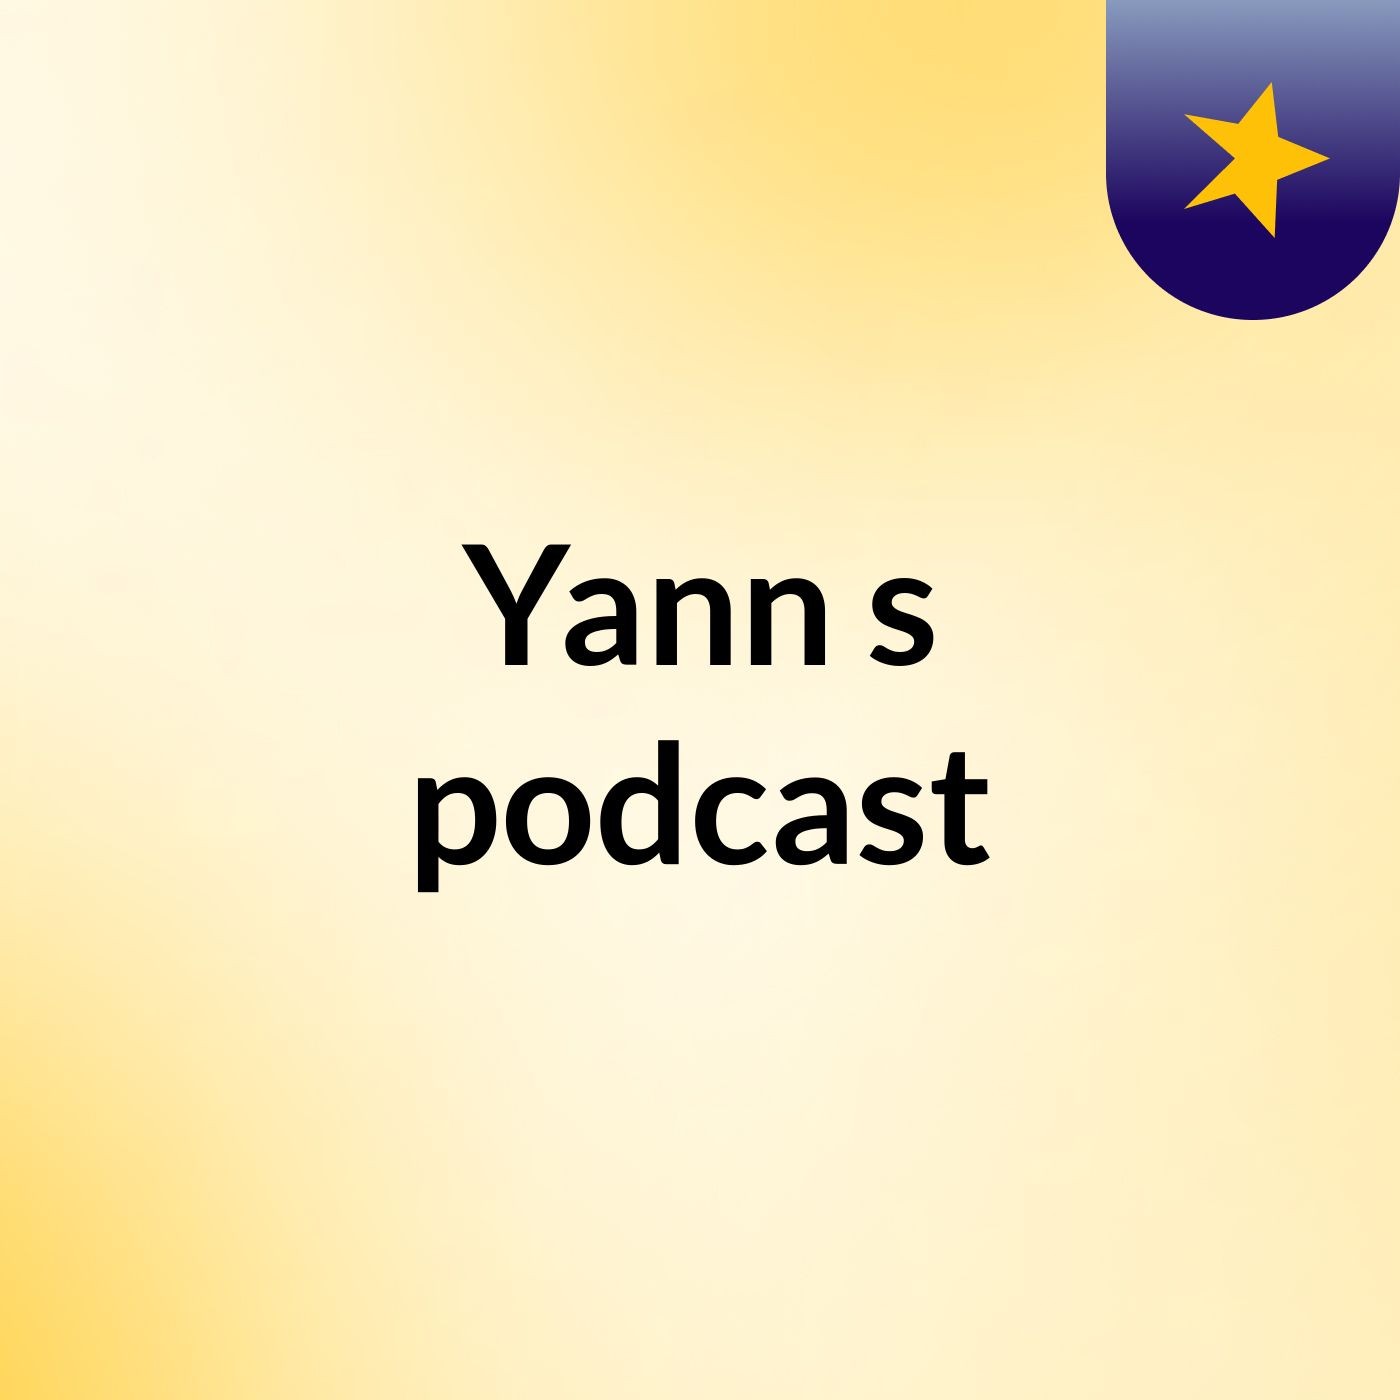 Yann's podcast